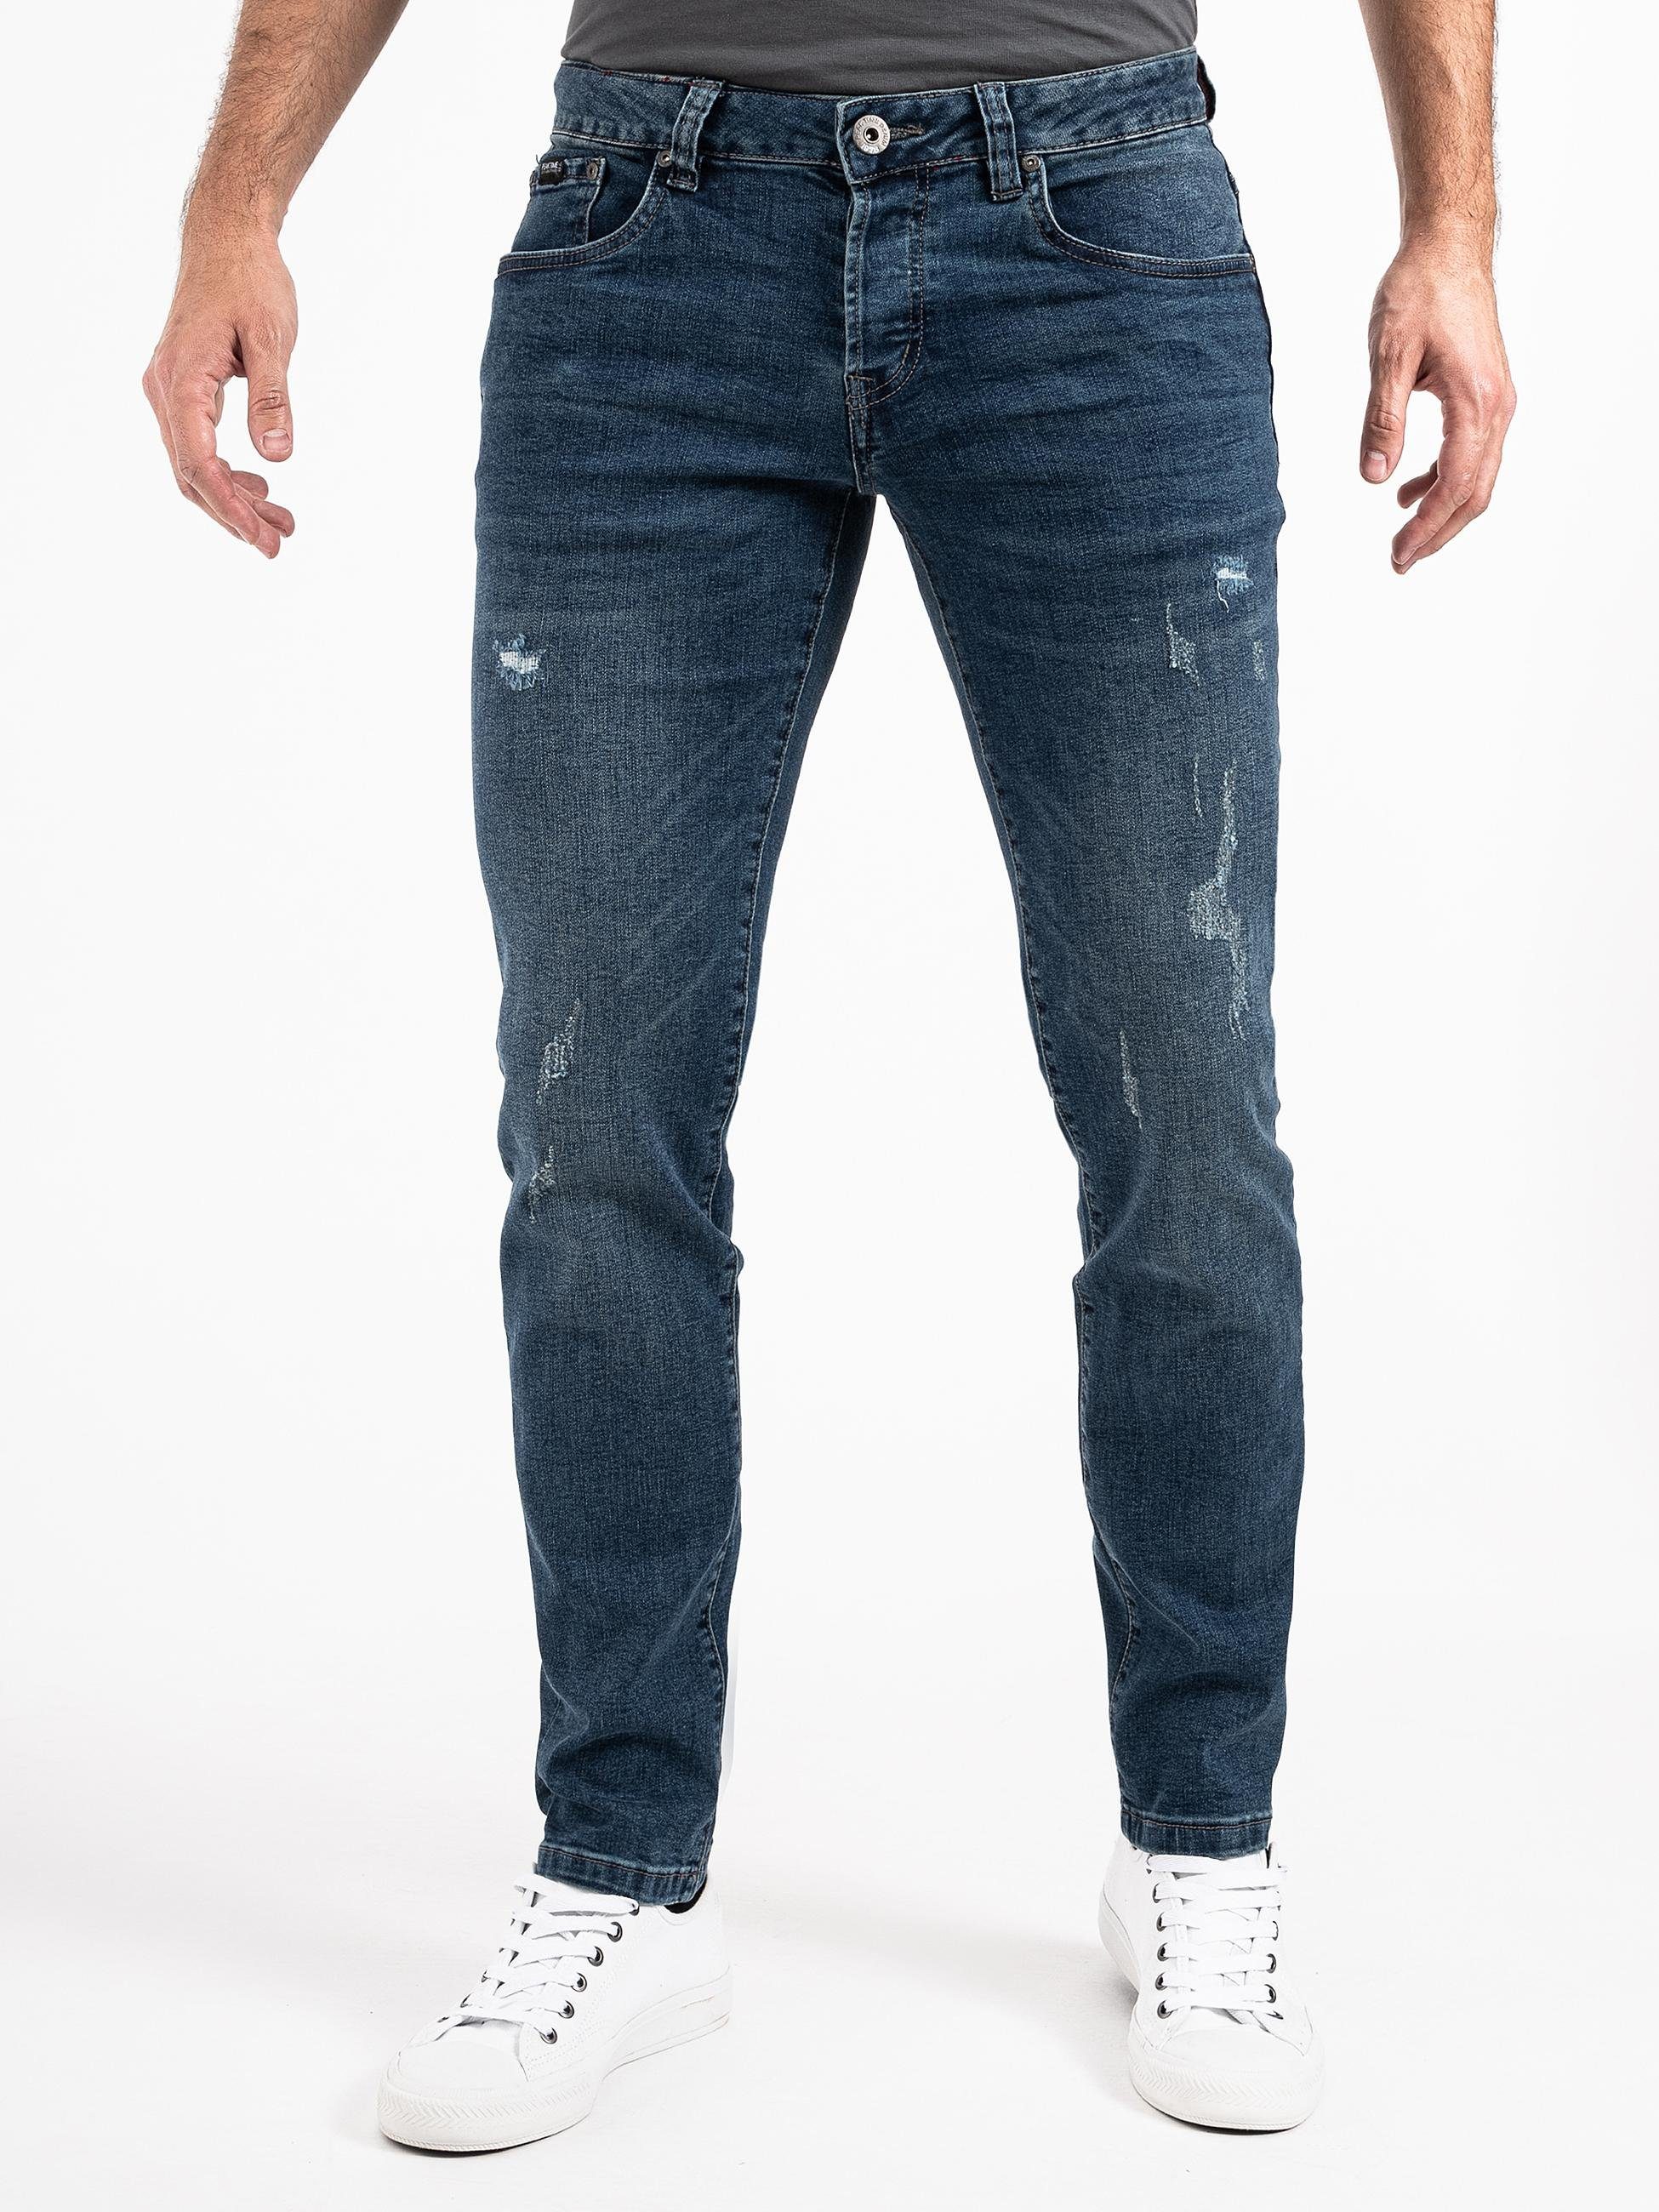 PEAK TIME Slim-fit-Jeans München Herren Jeans mit Stretch-Bund und Destroyed-Optik blau